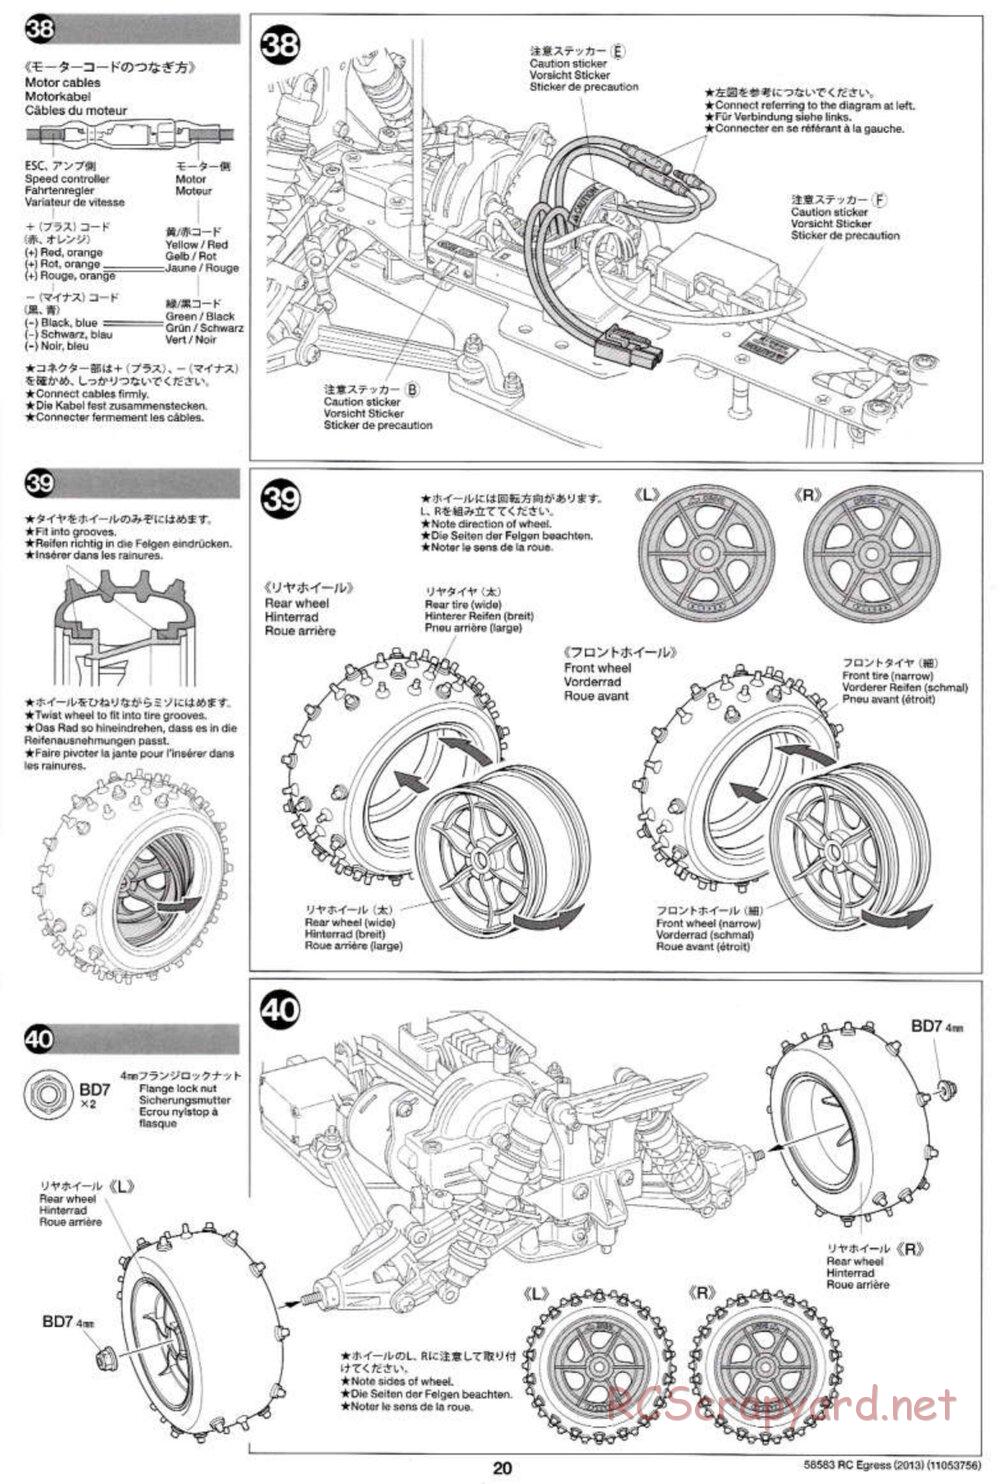 Tamiya - Egress 2013 - AV Chassis - Manual - Page 20